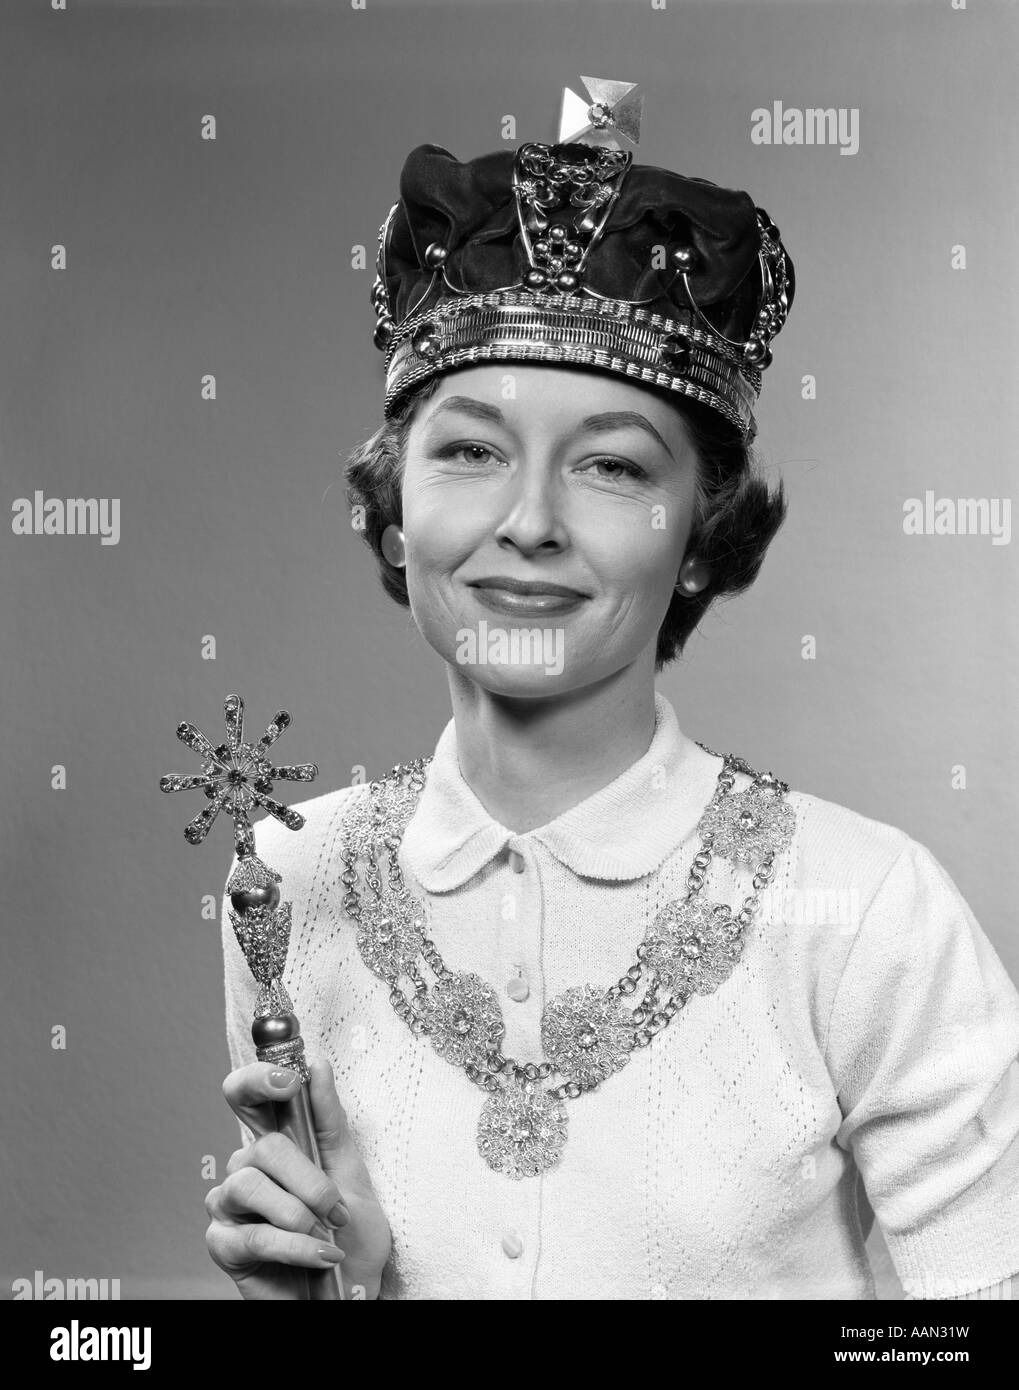 Années 1950, reine d'un jour Femme portant couronne royale HOLDING SCEPTRE LOOKING AT CAMERA Banque D'Images